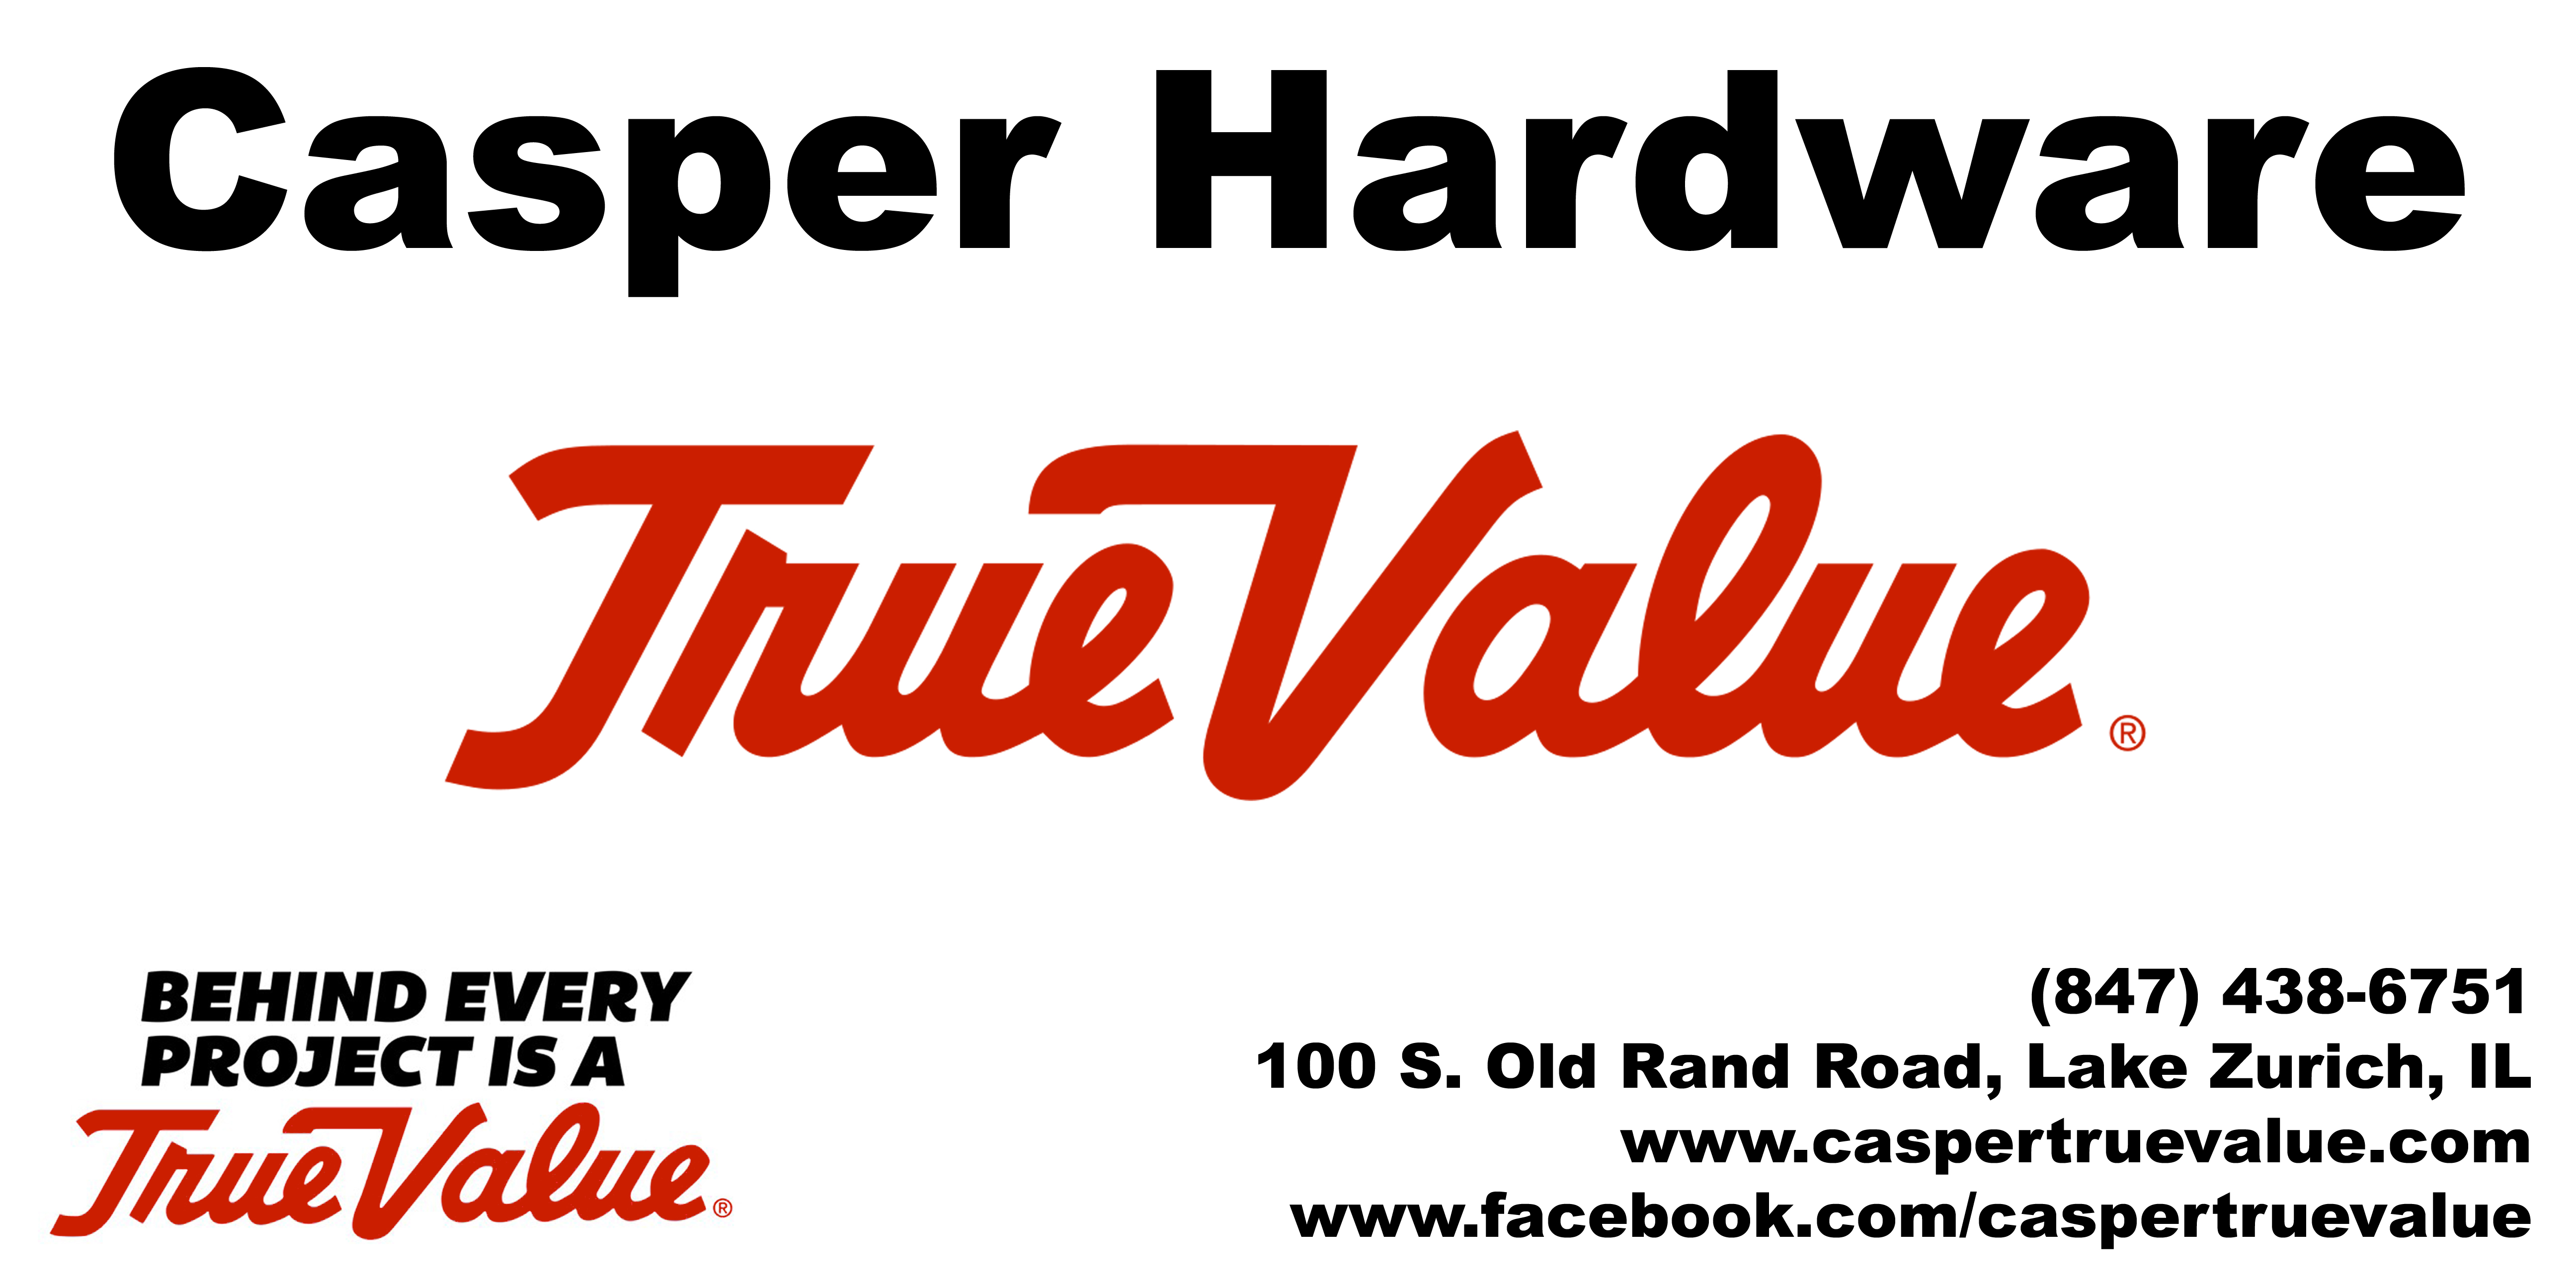 Casper True Value Hardware